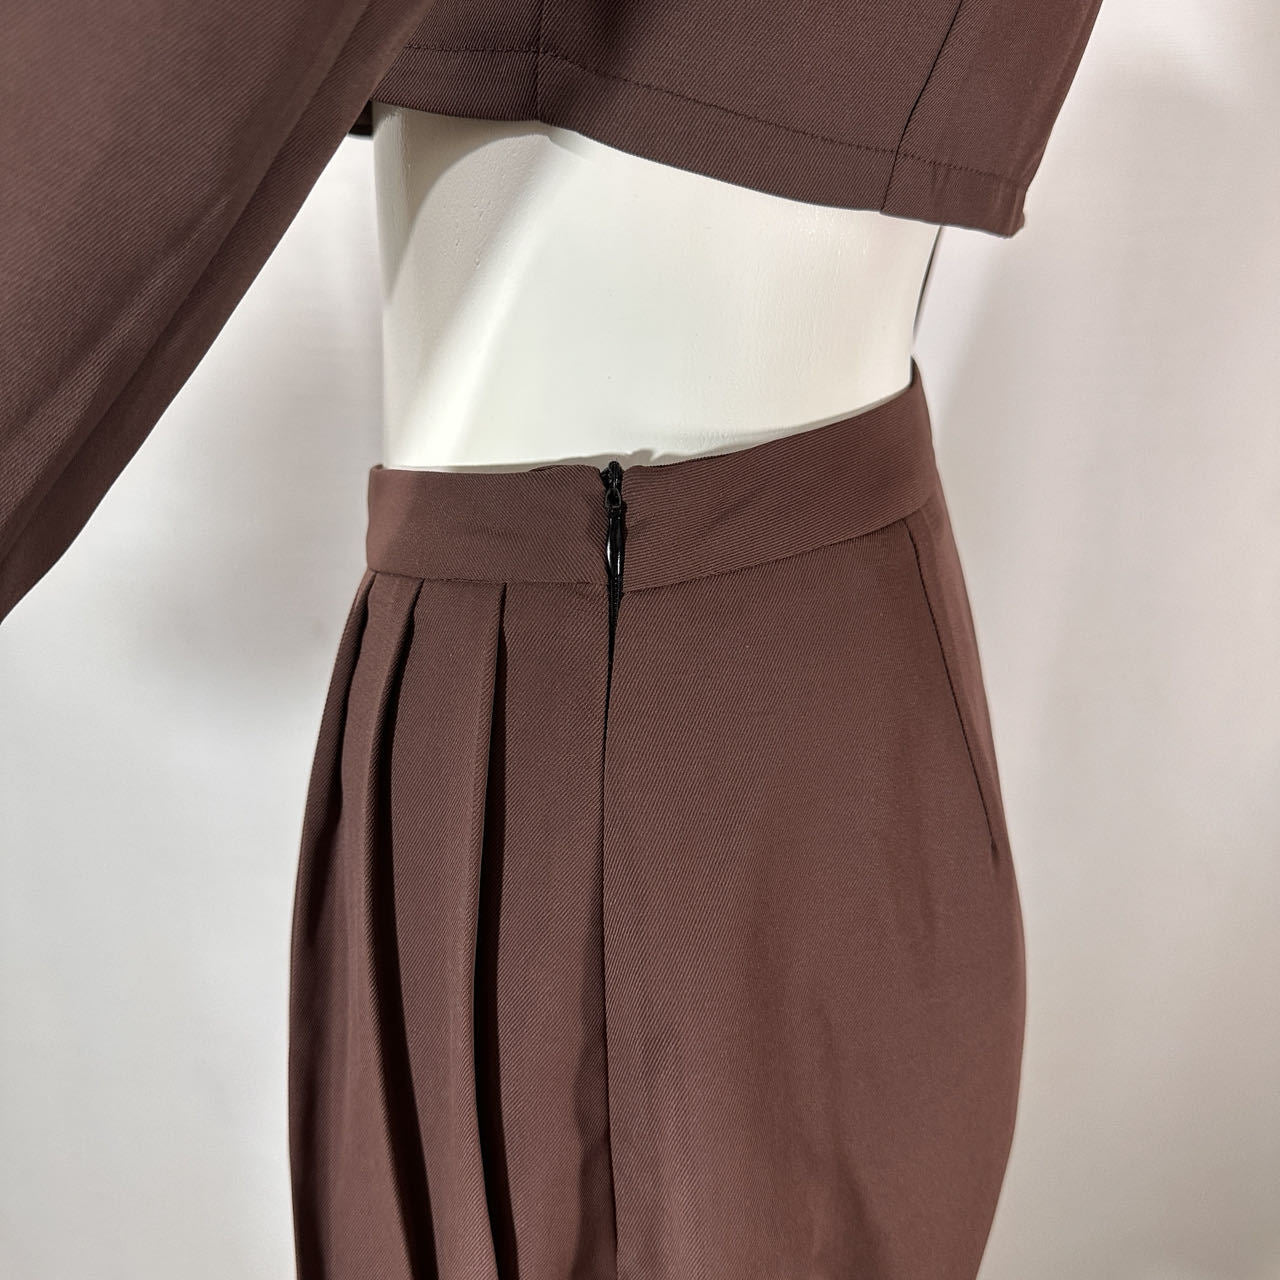 BamBam Stylish Casual Suit Slim Fit Chic Short Long Sleeve Blazer High Waist Pleated Miniskirt - BamBam Clothing